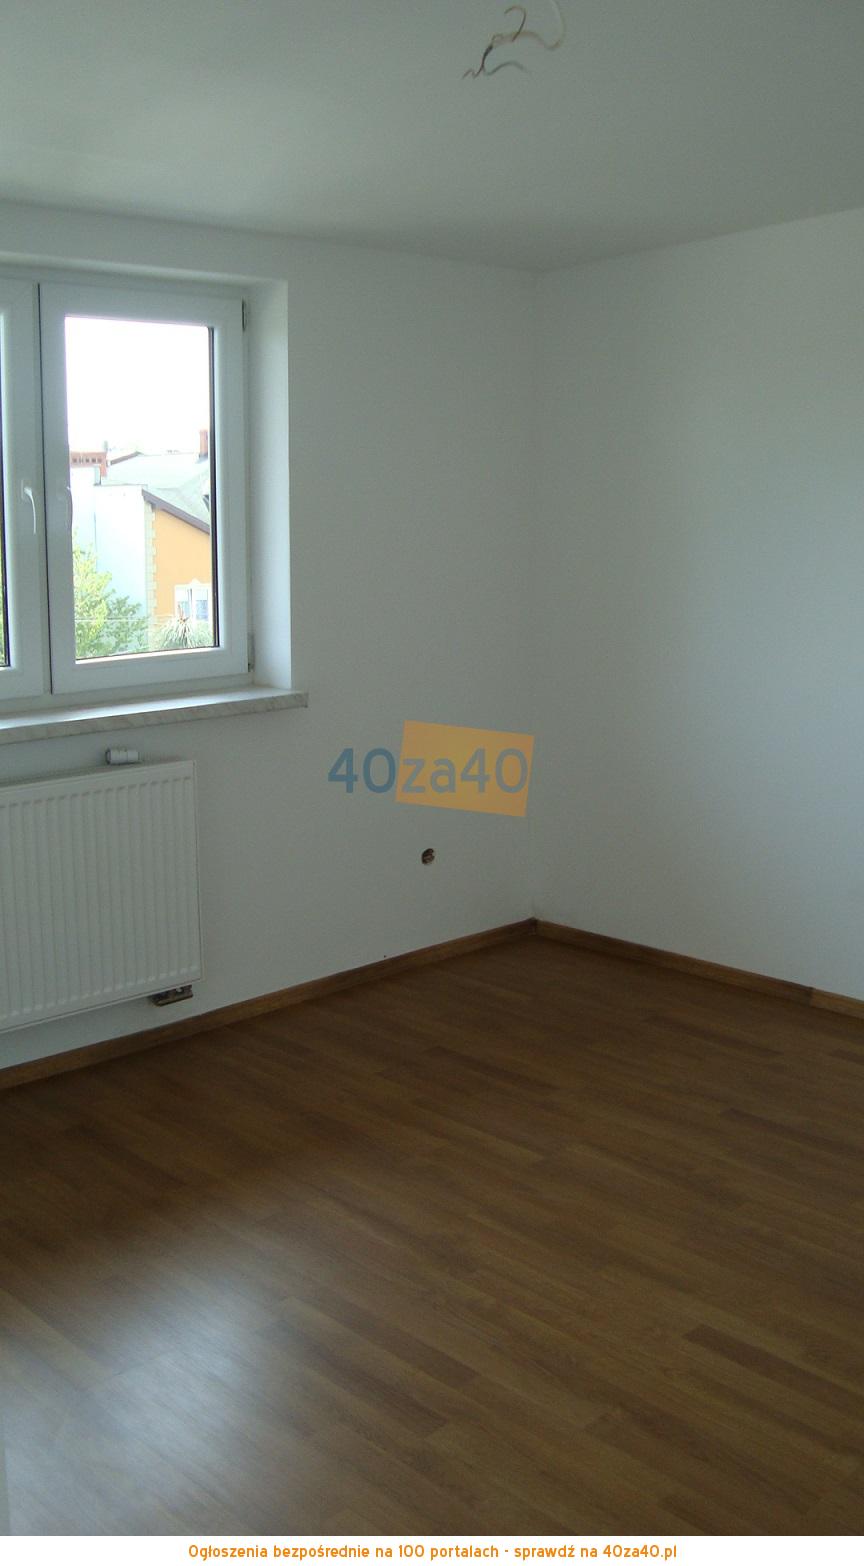 Mieszkanie do wynajęcia, pokoje: 2, cena: 1 500,00 PLN, Michałowice, kontakt: 601897901